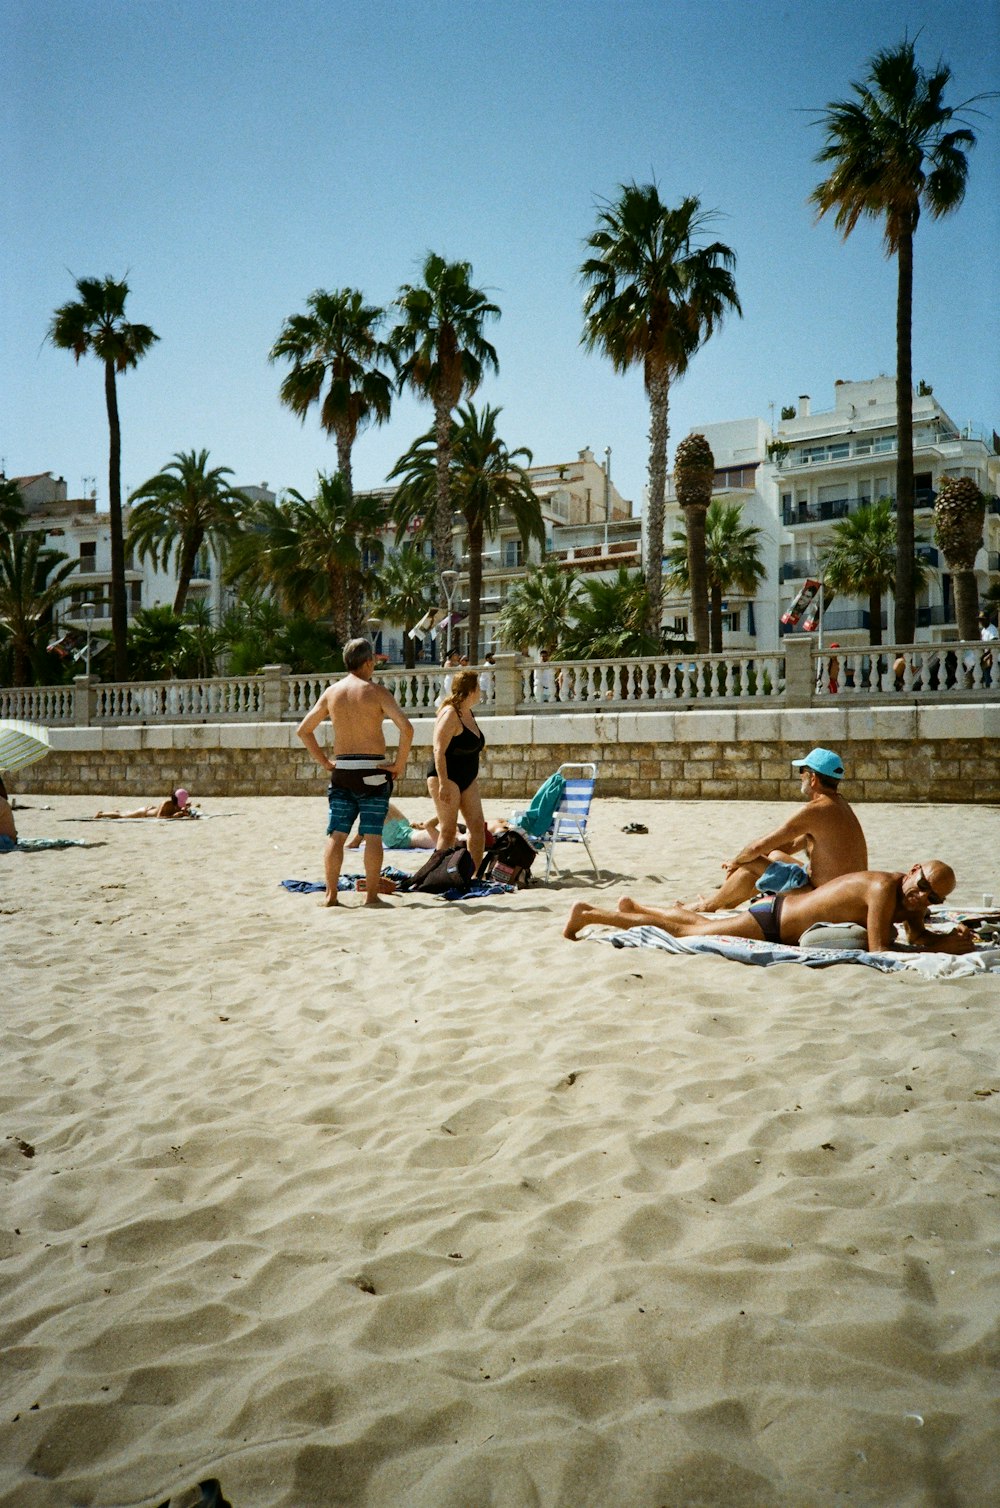 Un groupe de personnes sur une plage